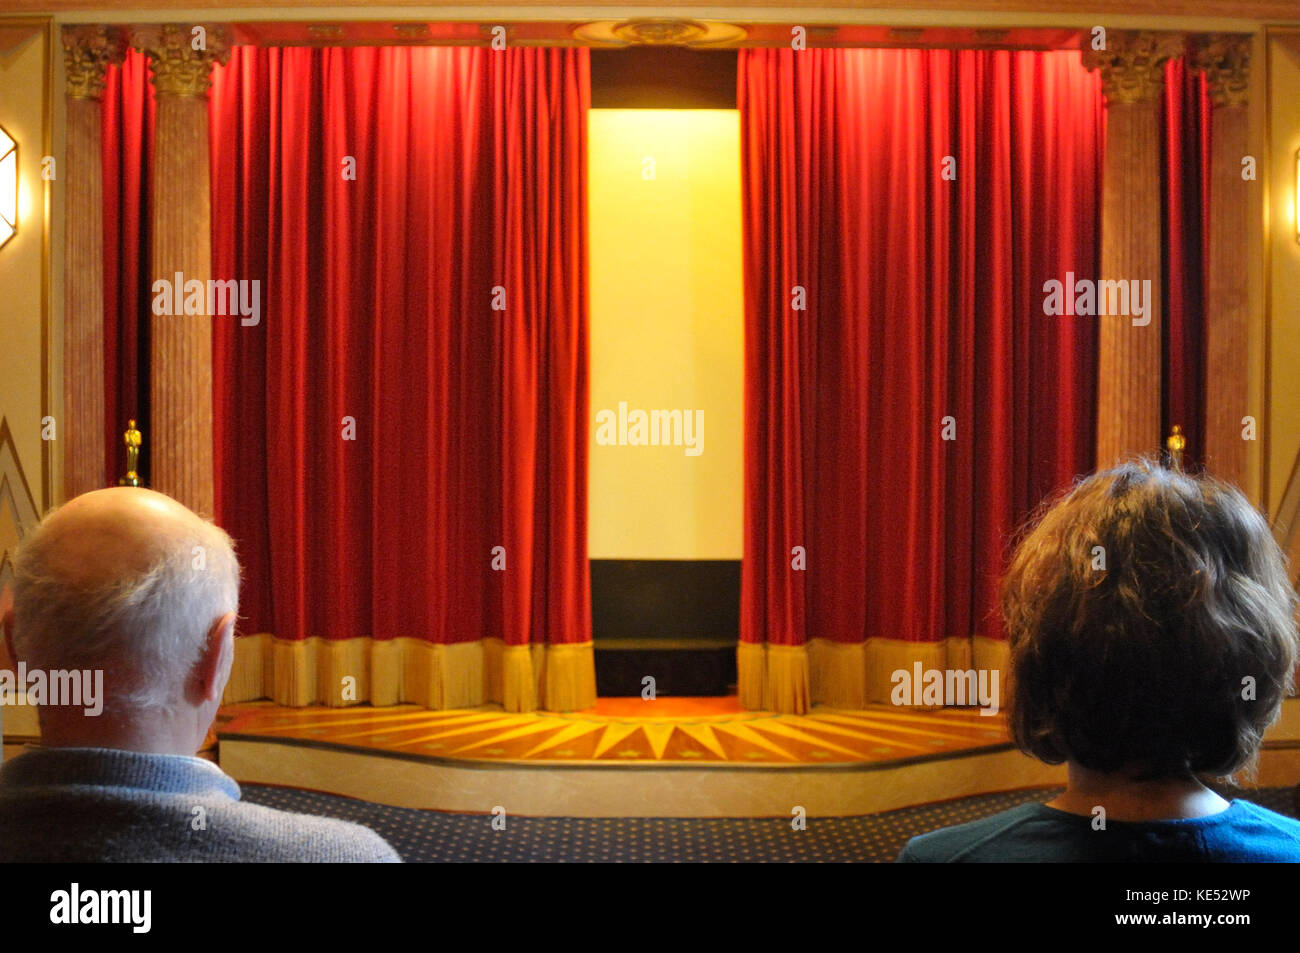 Des rideaux rouges de velours légèrement ouverte montre homme et femme regardant dans salle de cinéma construit en 1920, début des années 1930 style. Bien éclairée. Banque D'Images